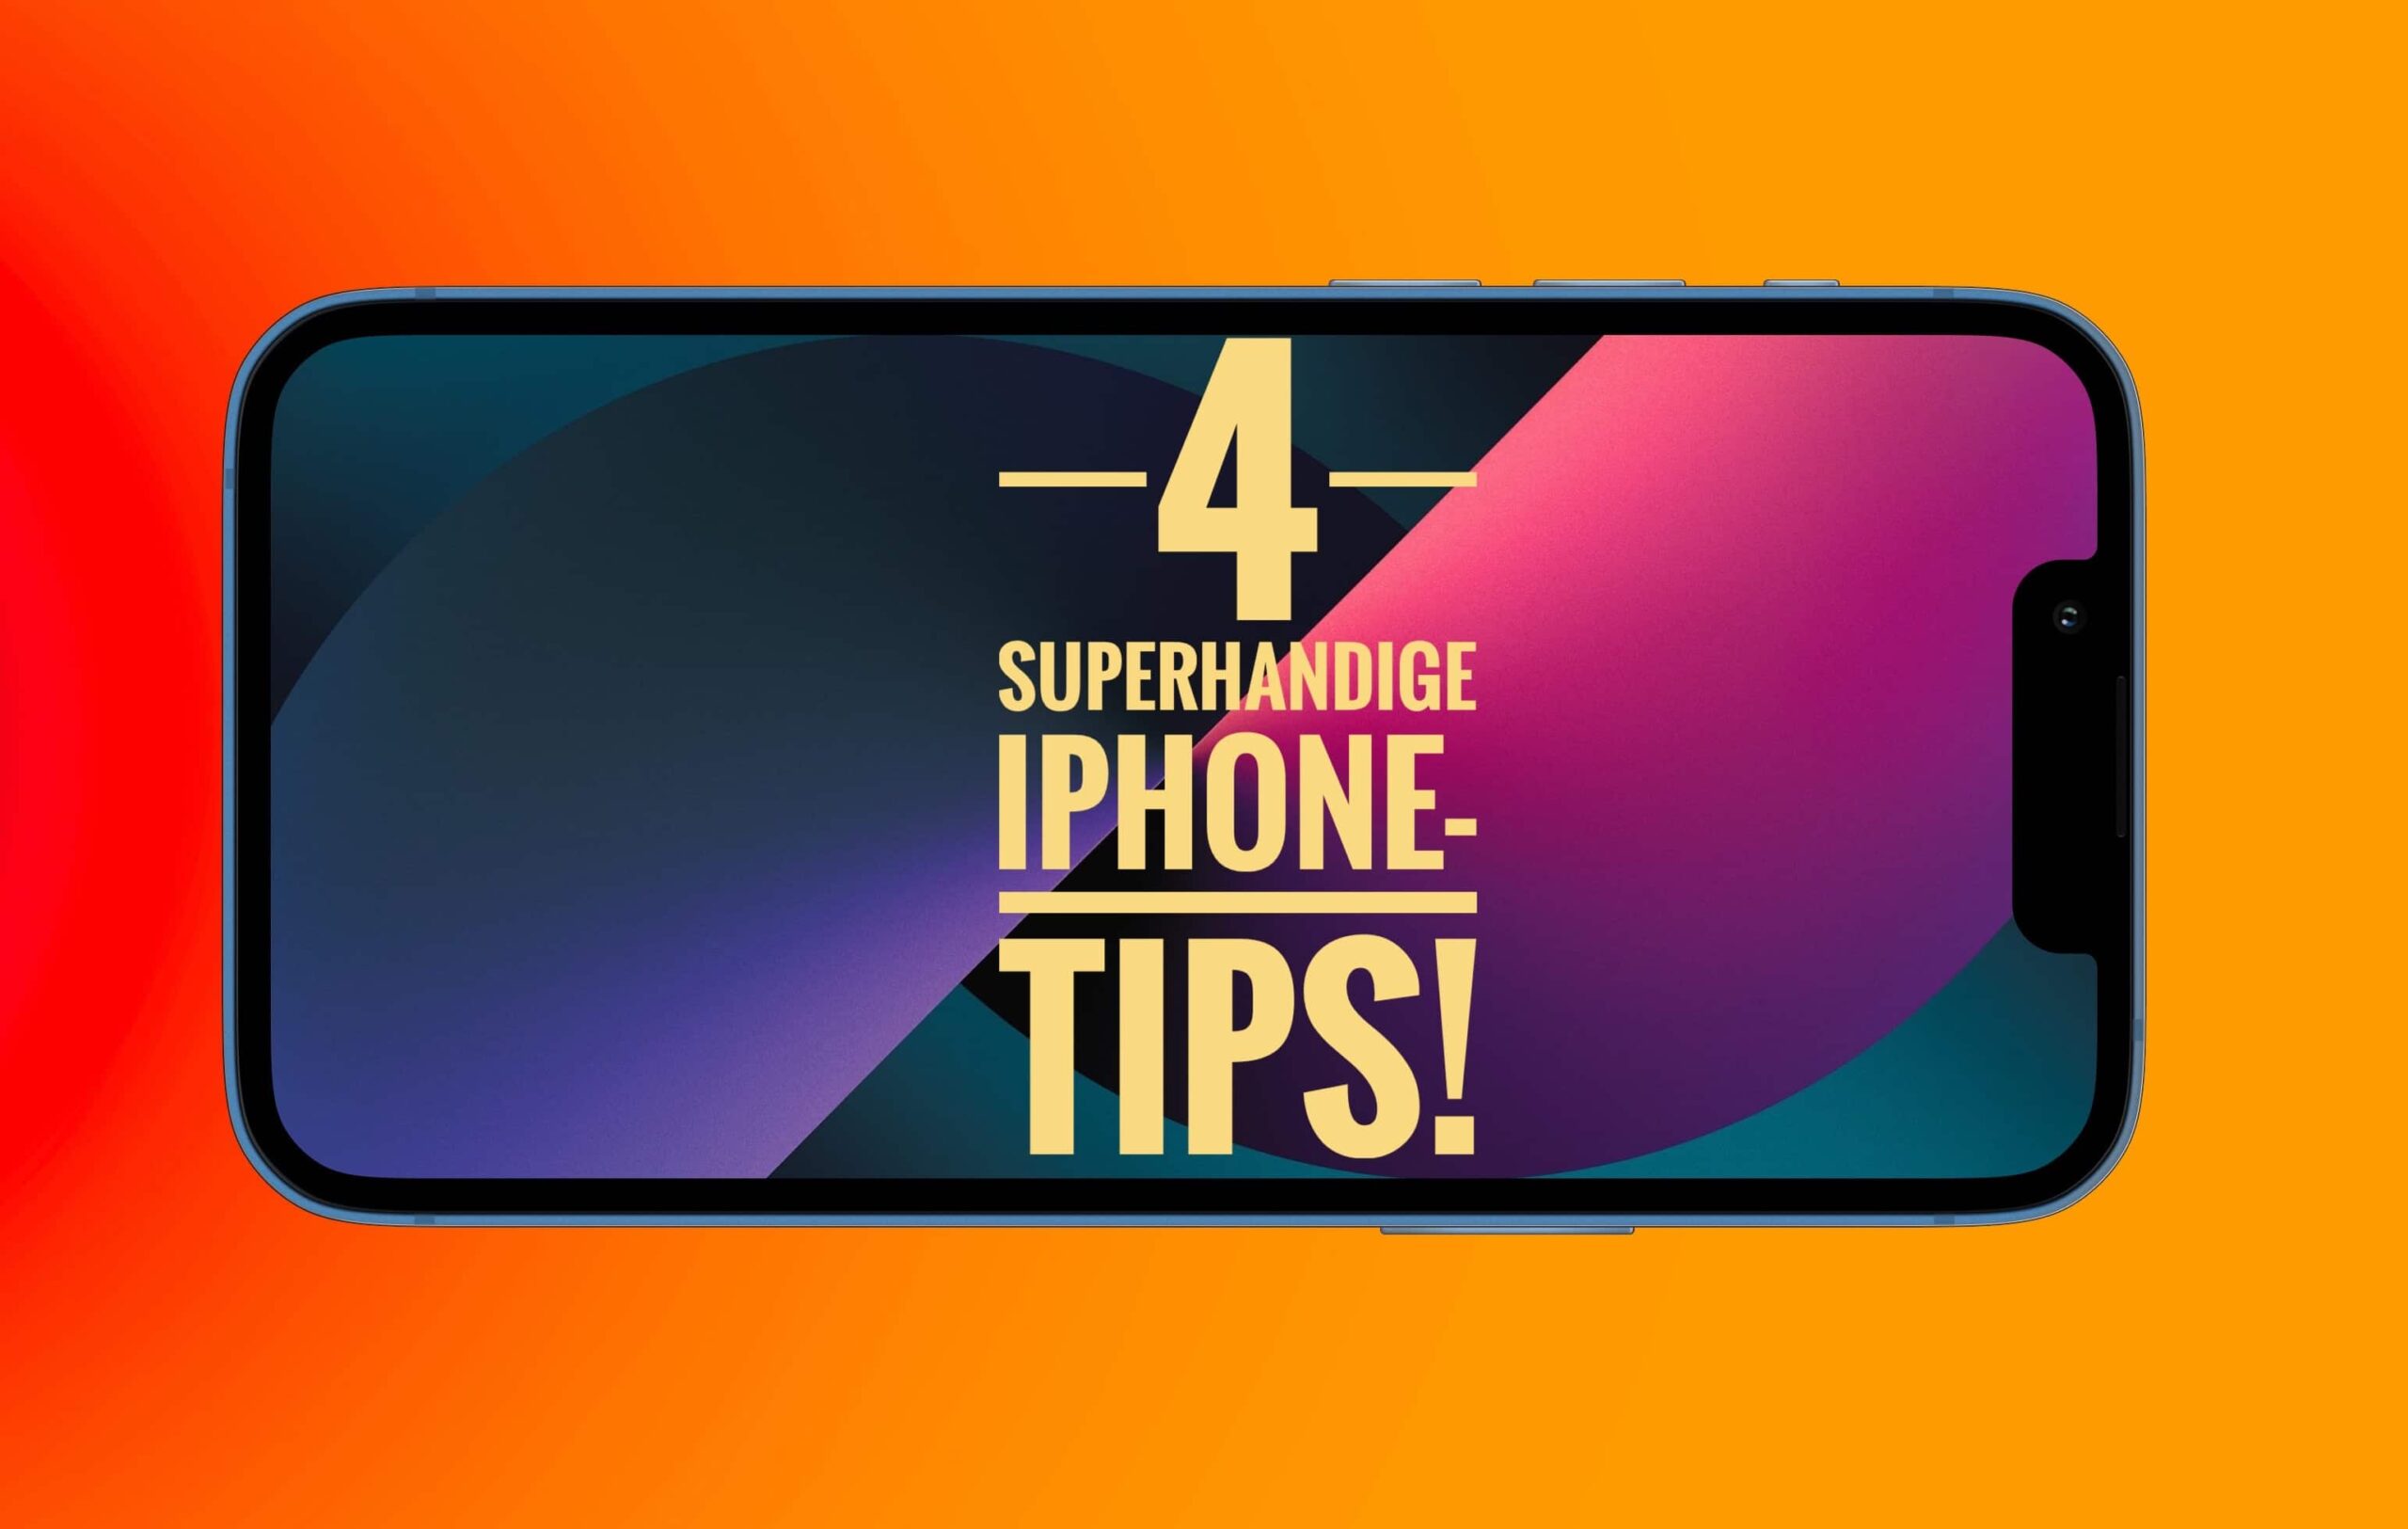 iPhone-tips: 4 superhandige tips die je moet weten